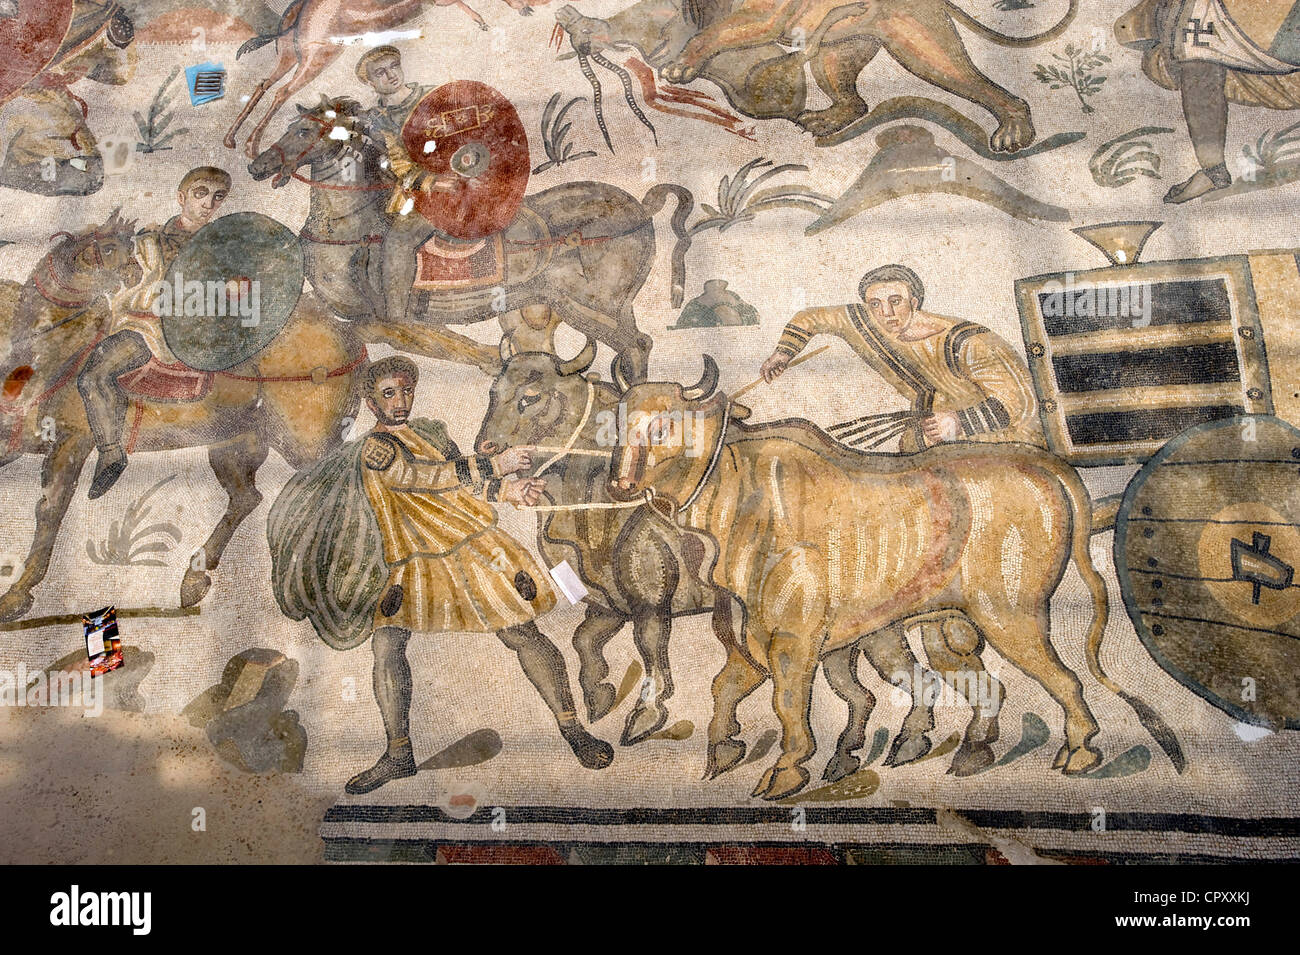 Italy, Sicily, Piazza Armerina, Roman mosaics in the Villa Del Casale Stock Photo